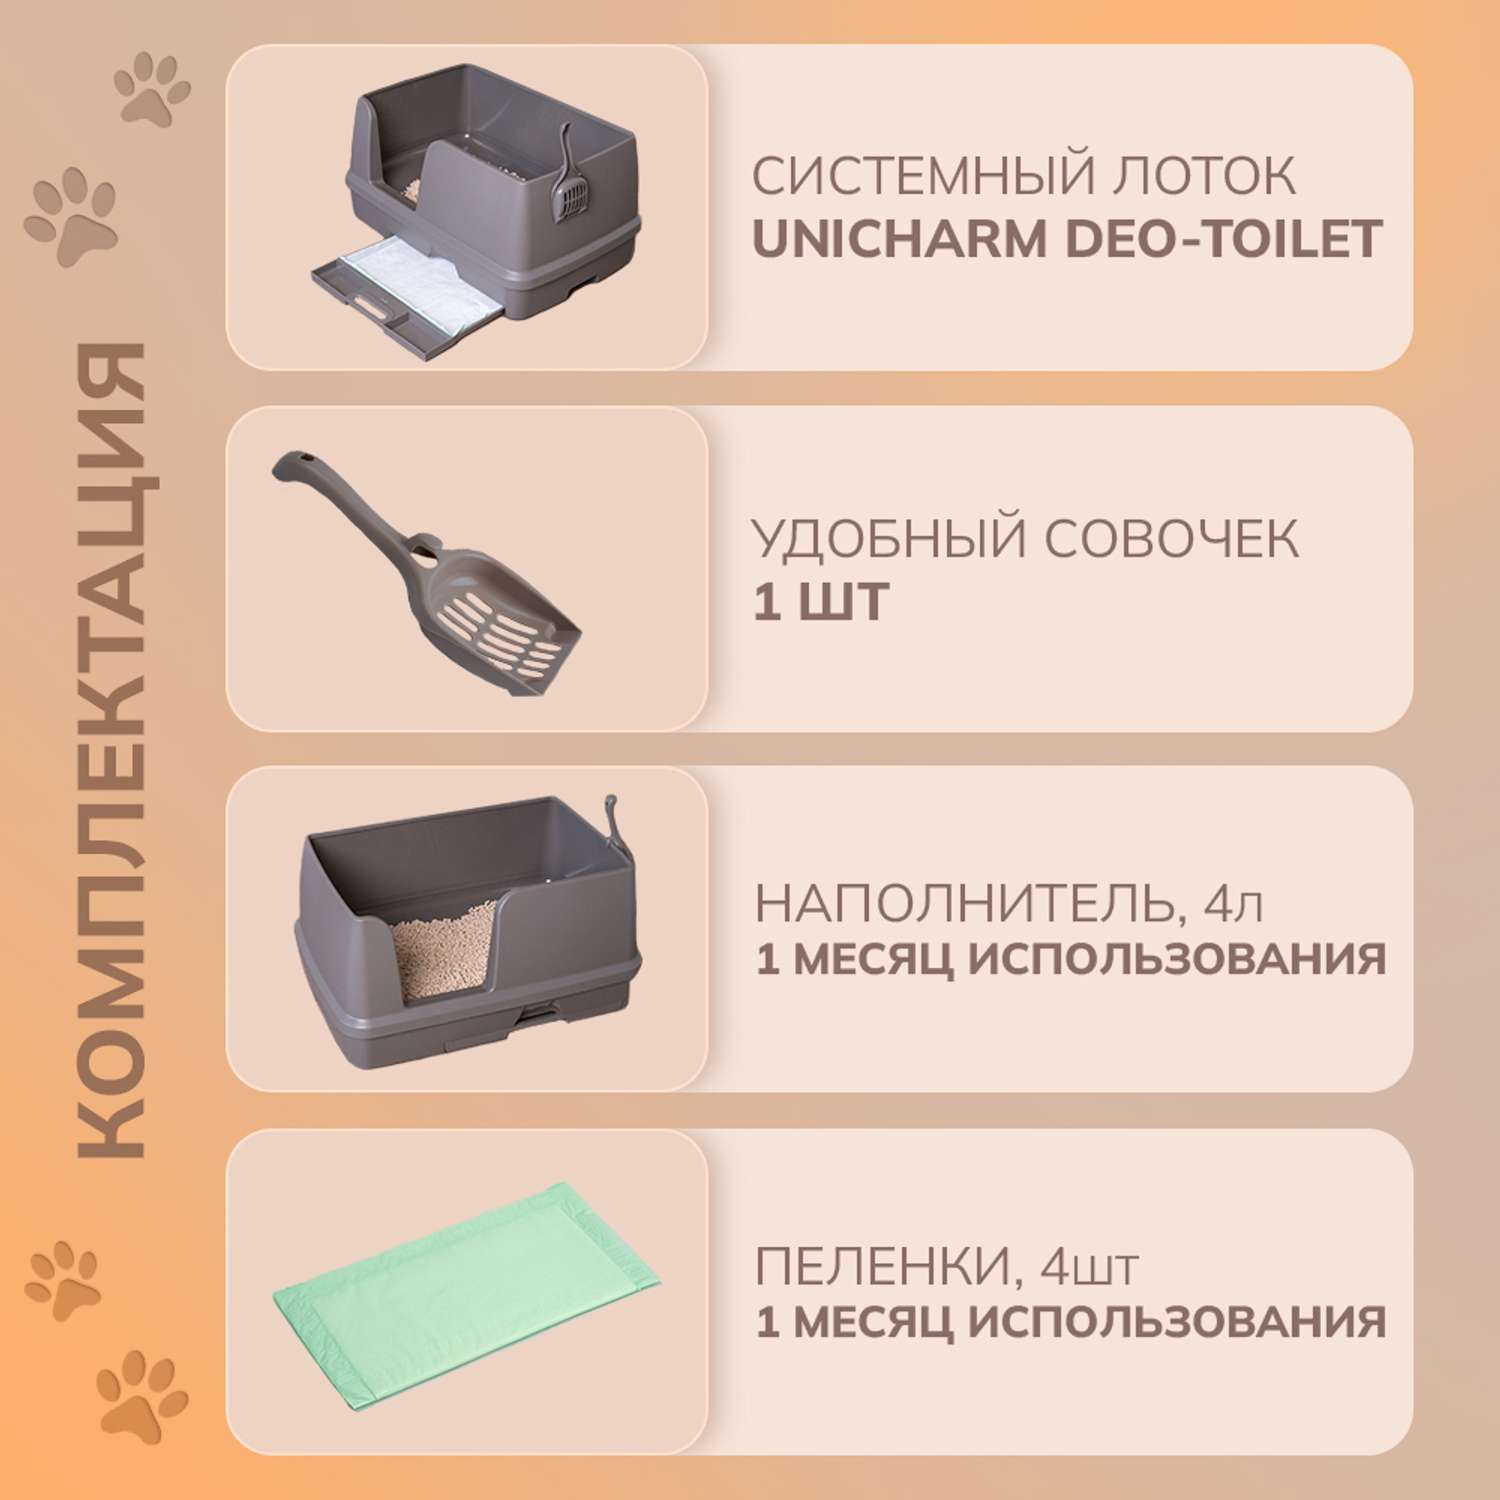 Cистемный туалет DeoToilet Unicharm Для крупных кошек открытого типа с высокими бортами цвет мокко набор - фото 2